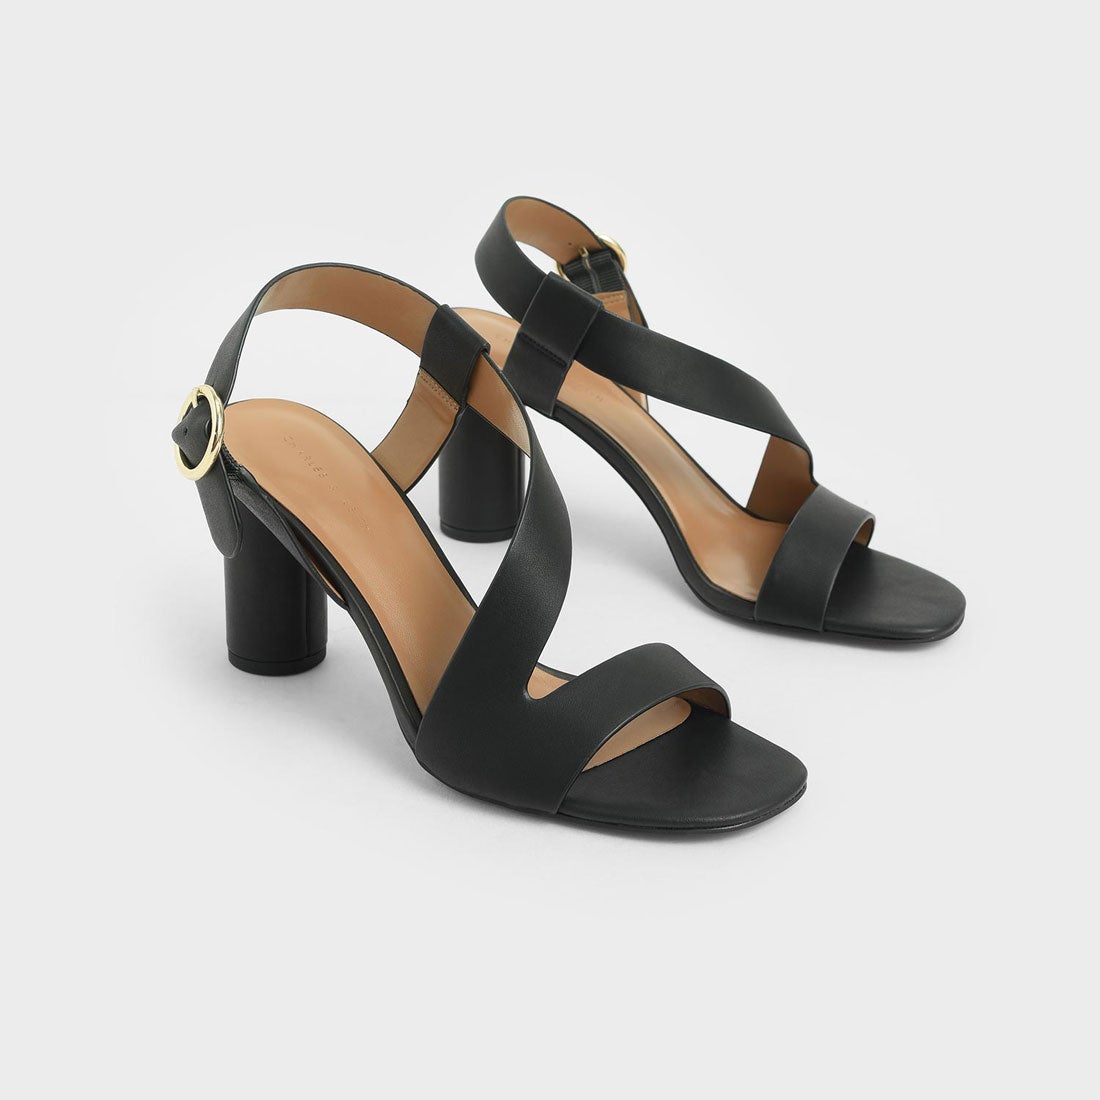 【ブランド】 サンダル アシンメトリック ストラップヒールサンダル / Asymmetric Strap Heeled Sandals